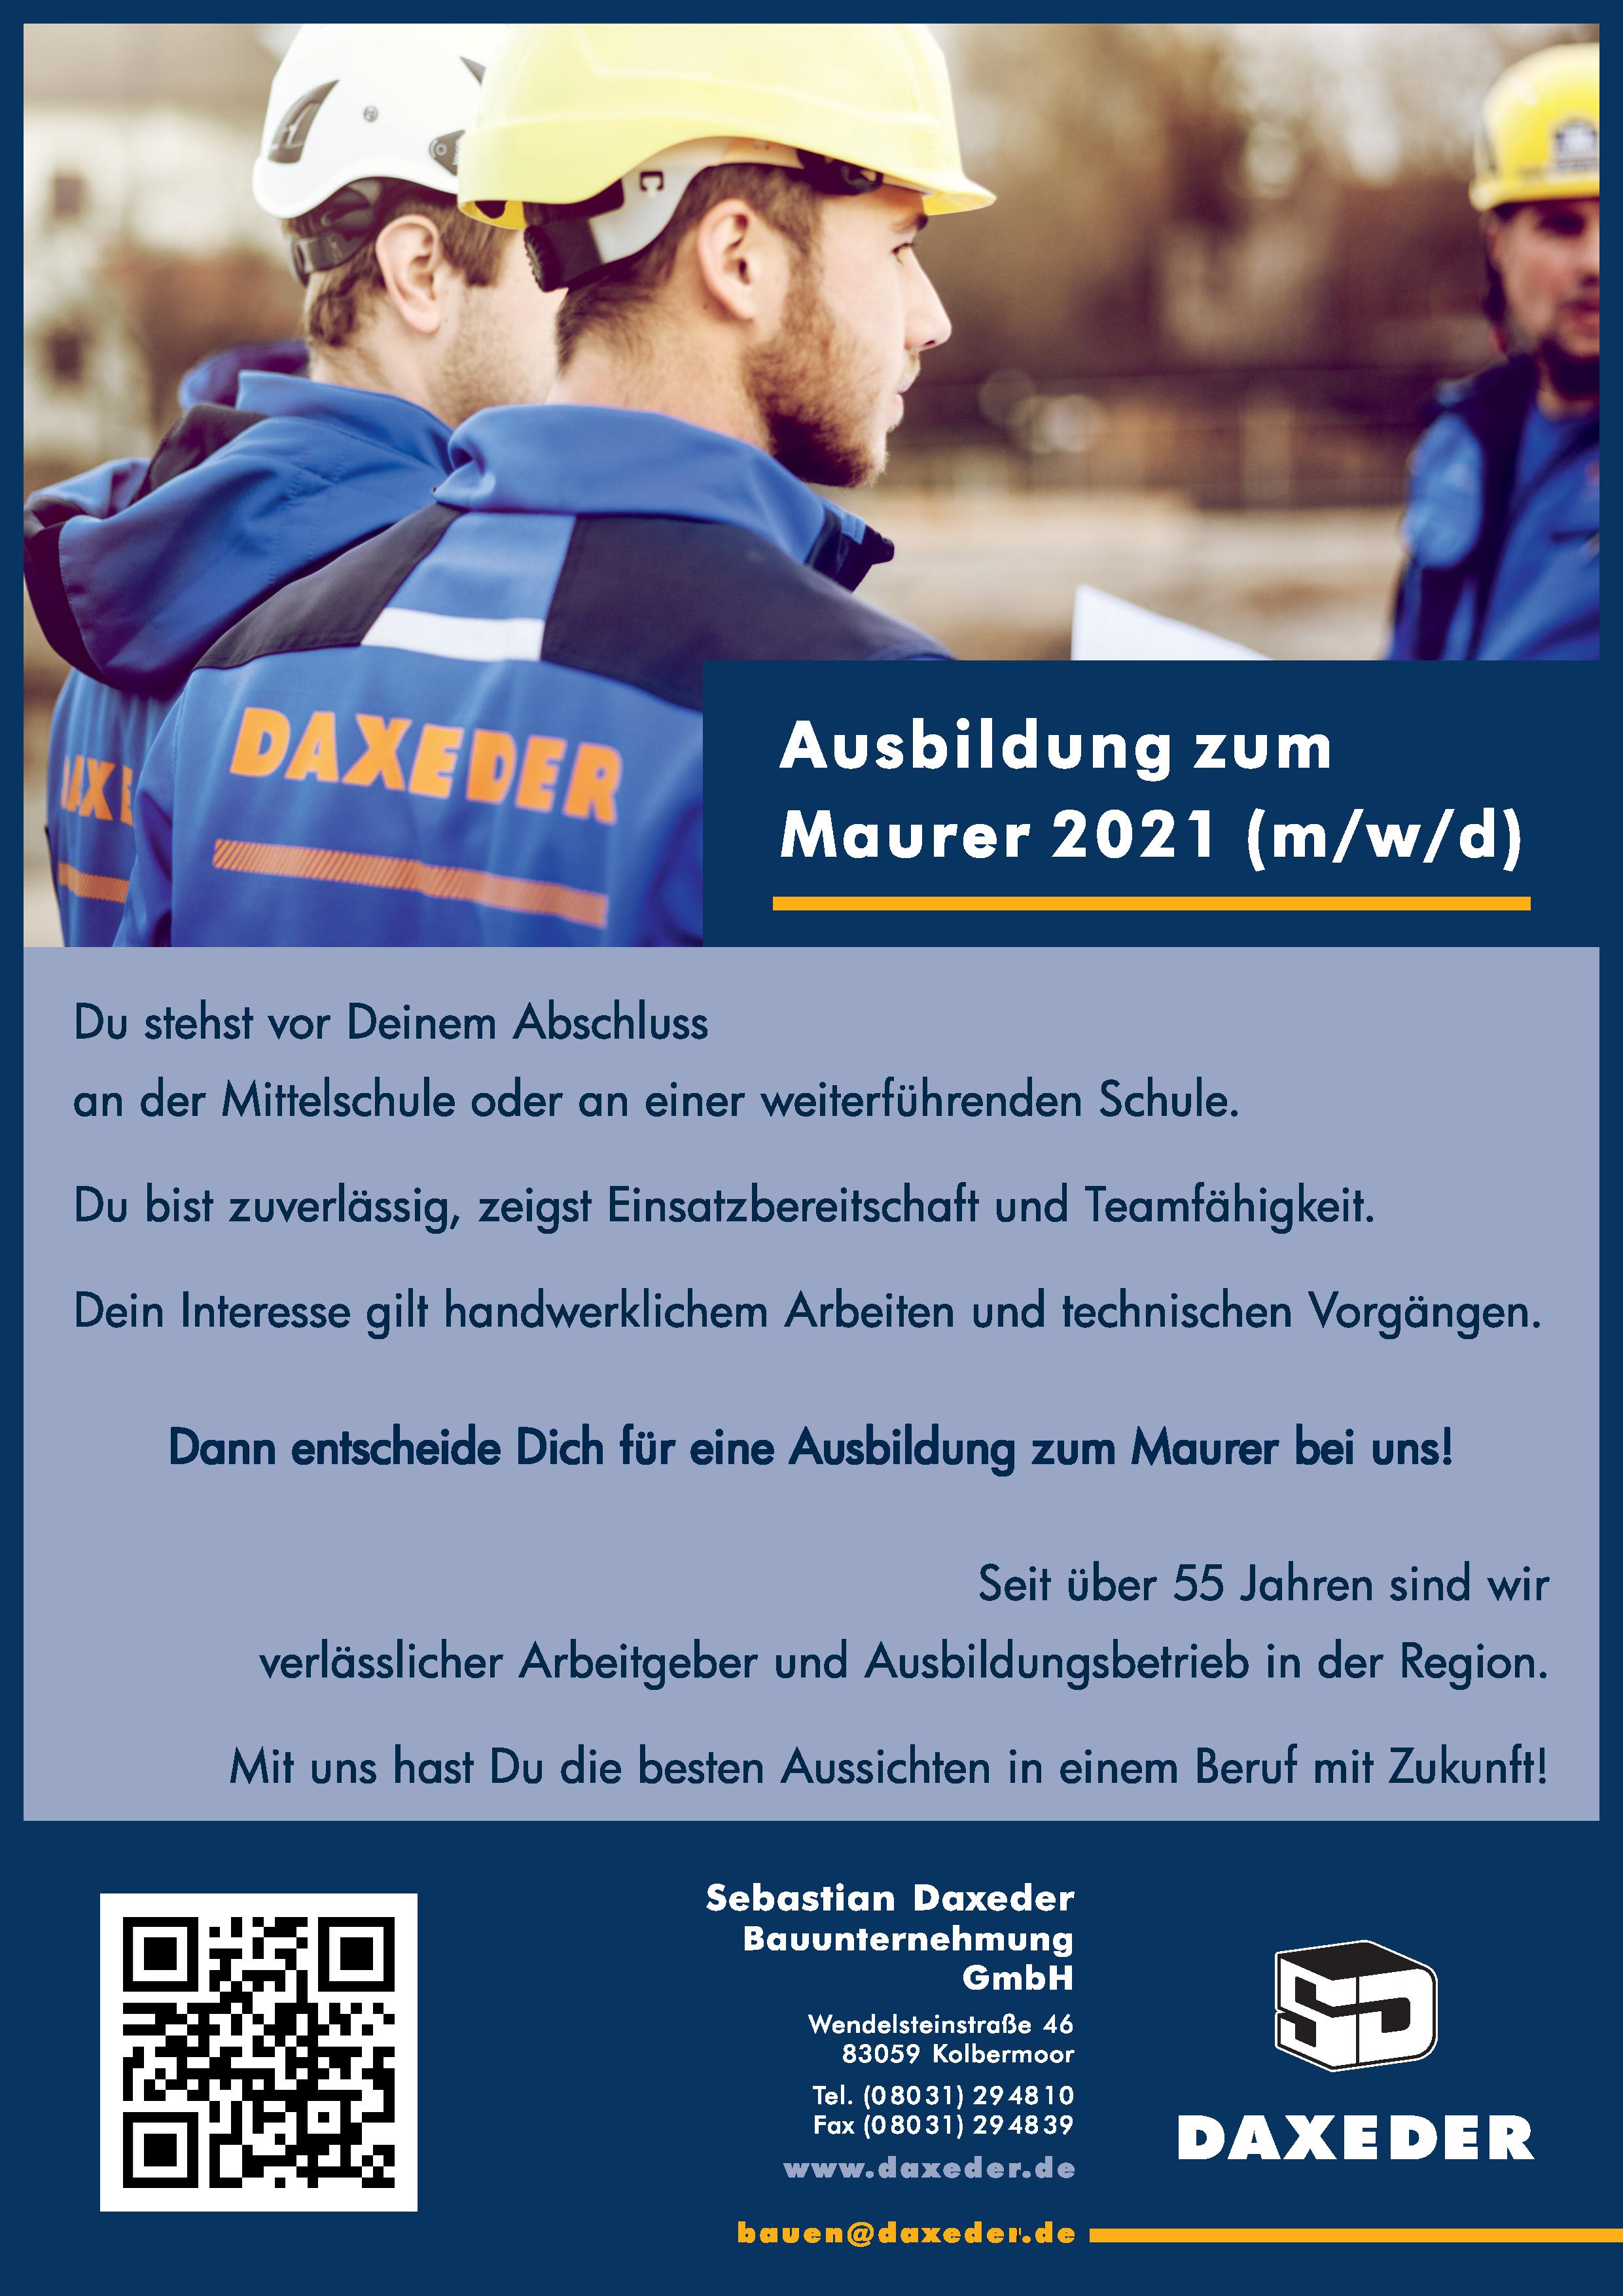 Sebastian Daxeder Bauunternehmung, Ausbildung, Maurer, 2021, Abschluss, Kolbermoor, Rosenheim